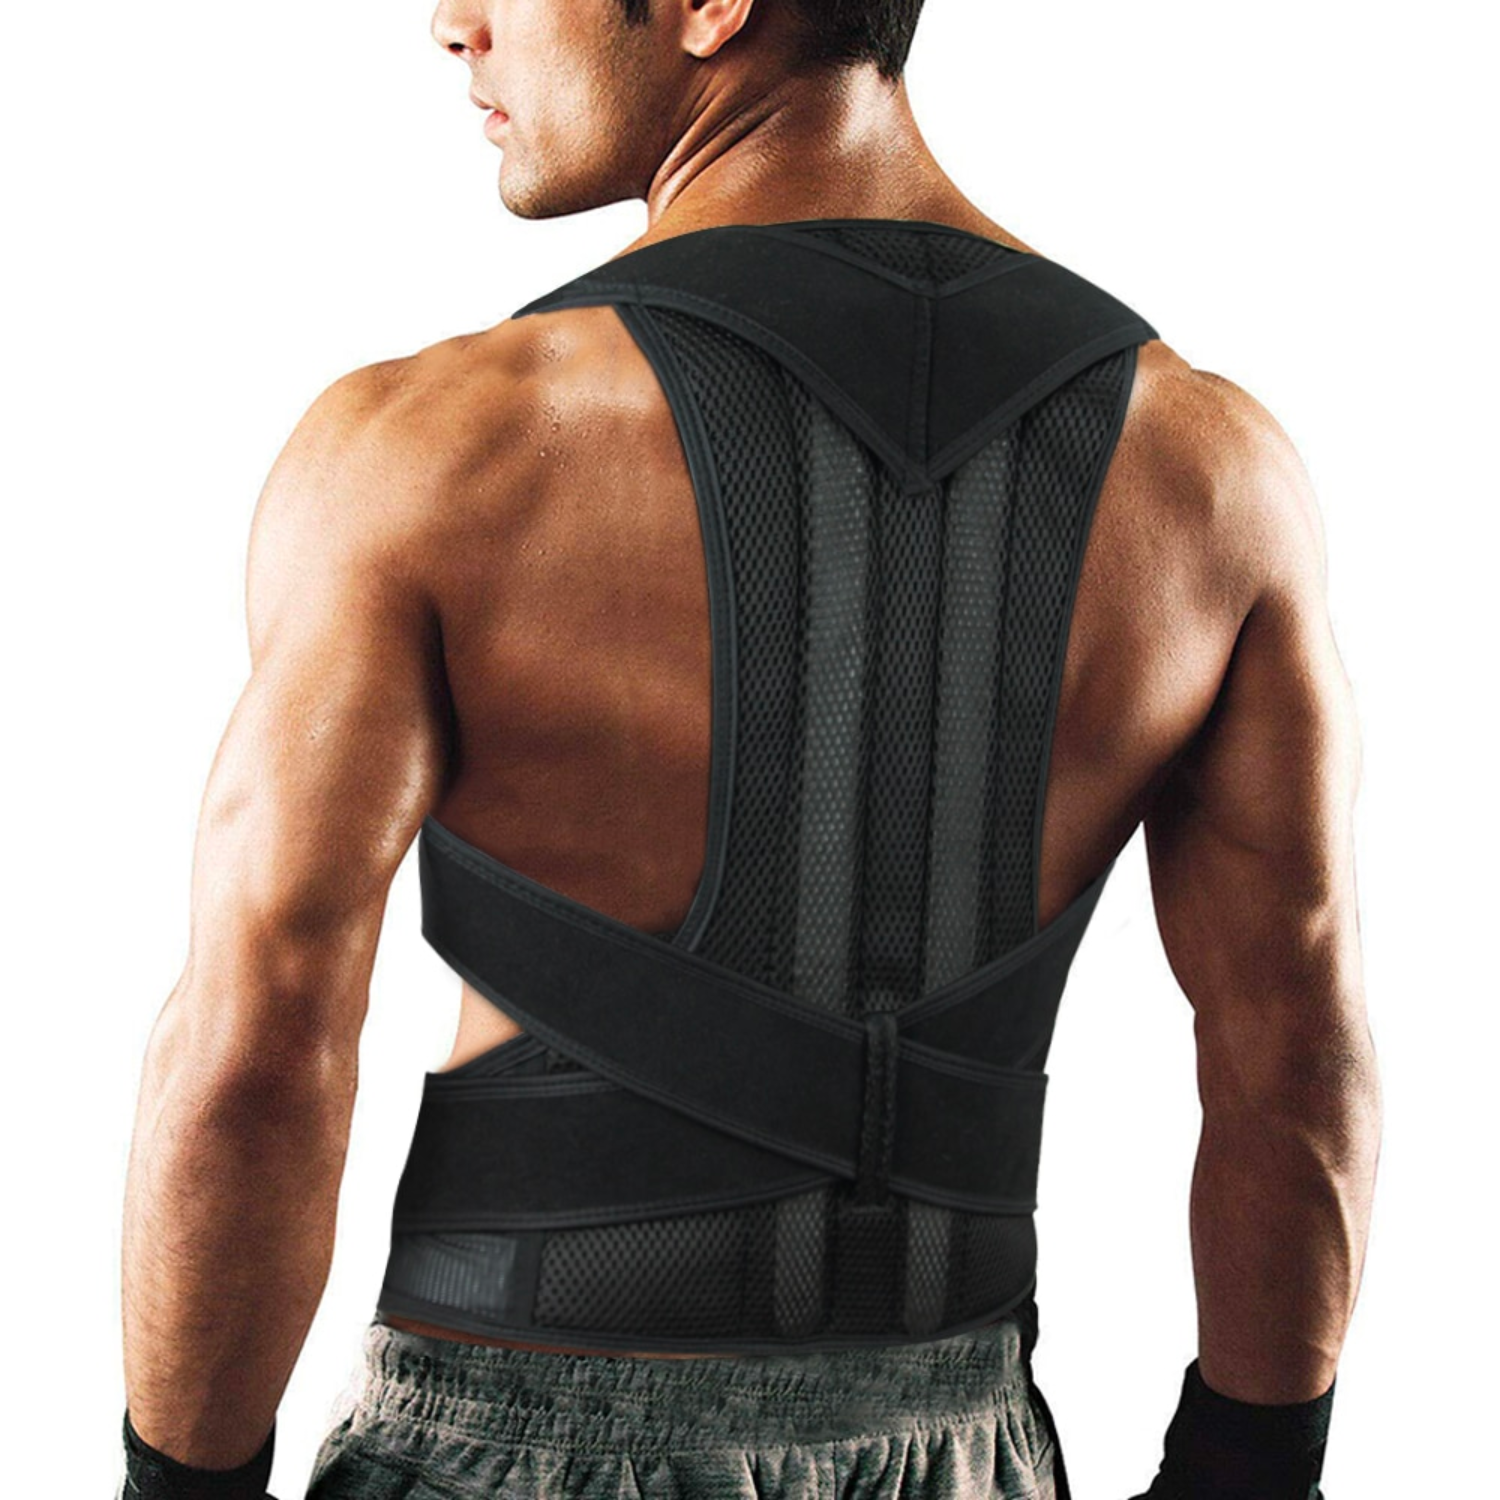 adjustable back brace posture corrector back support shoulder belt lumbar spine support belt posture correction